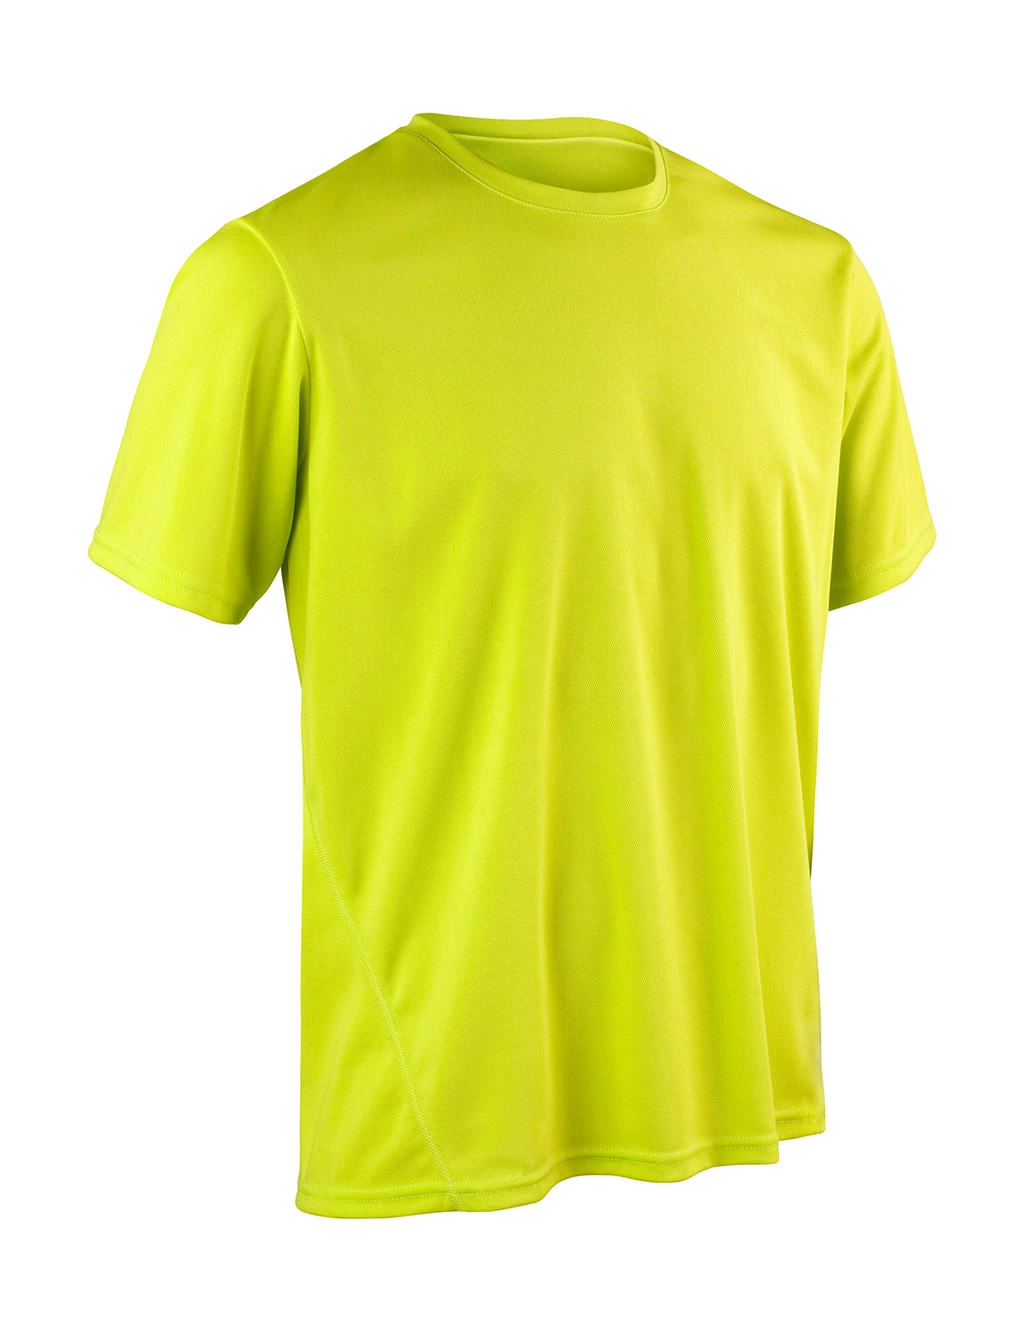 Performance T-Shirt zum Besticken und Bedrucken in der Farbe Lime Green mit Ihren Logo, Schriftzug oder Motiv.